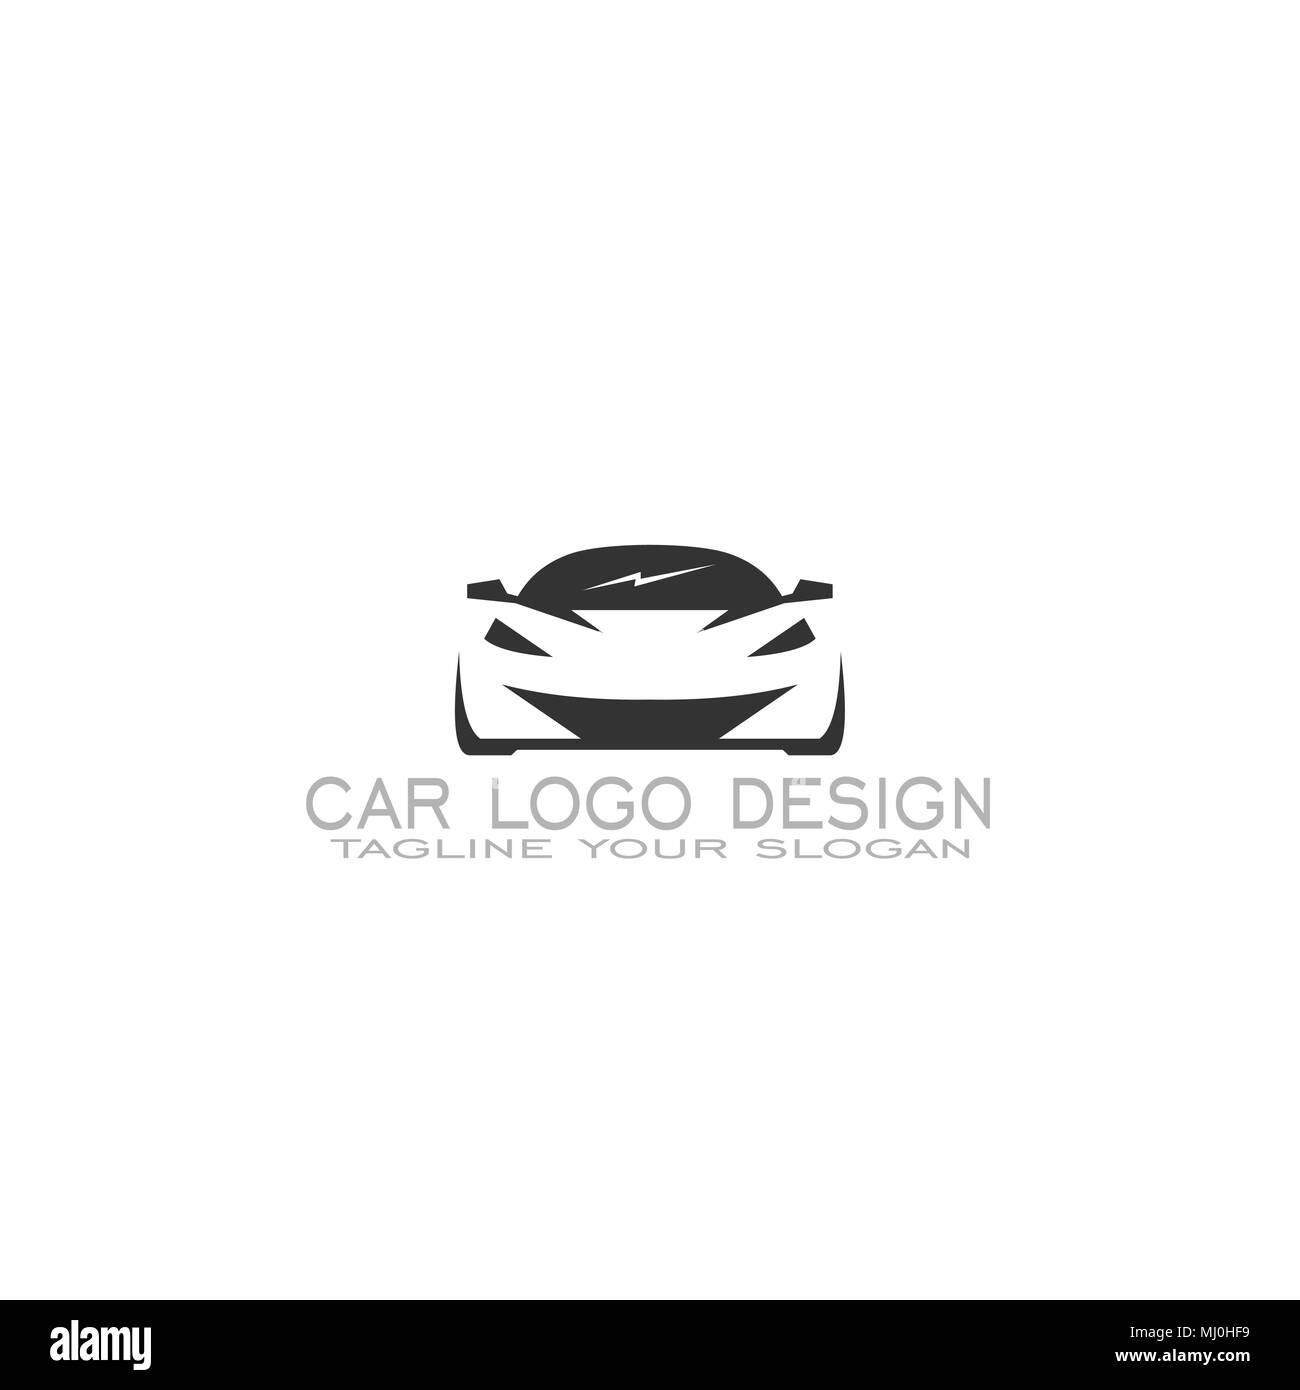 Car logo design, auto car logo, silhouette logo design, vector icons Stock  Vector Image & Art - Alamy